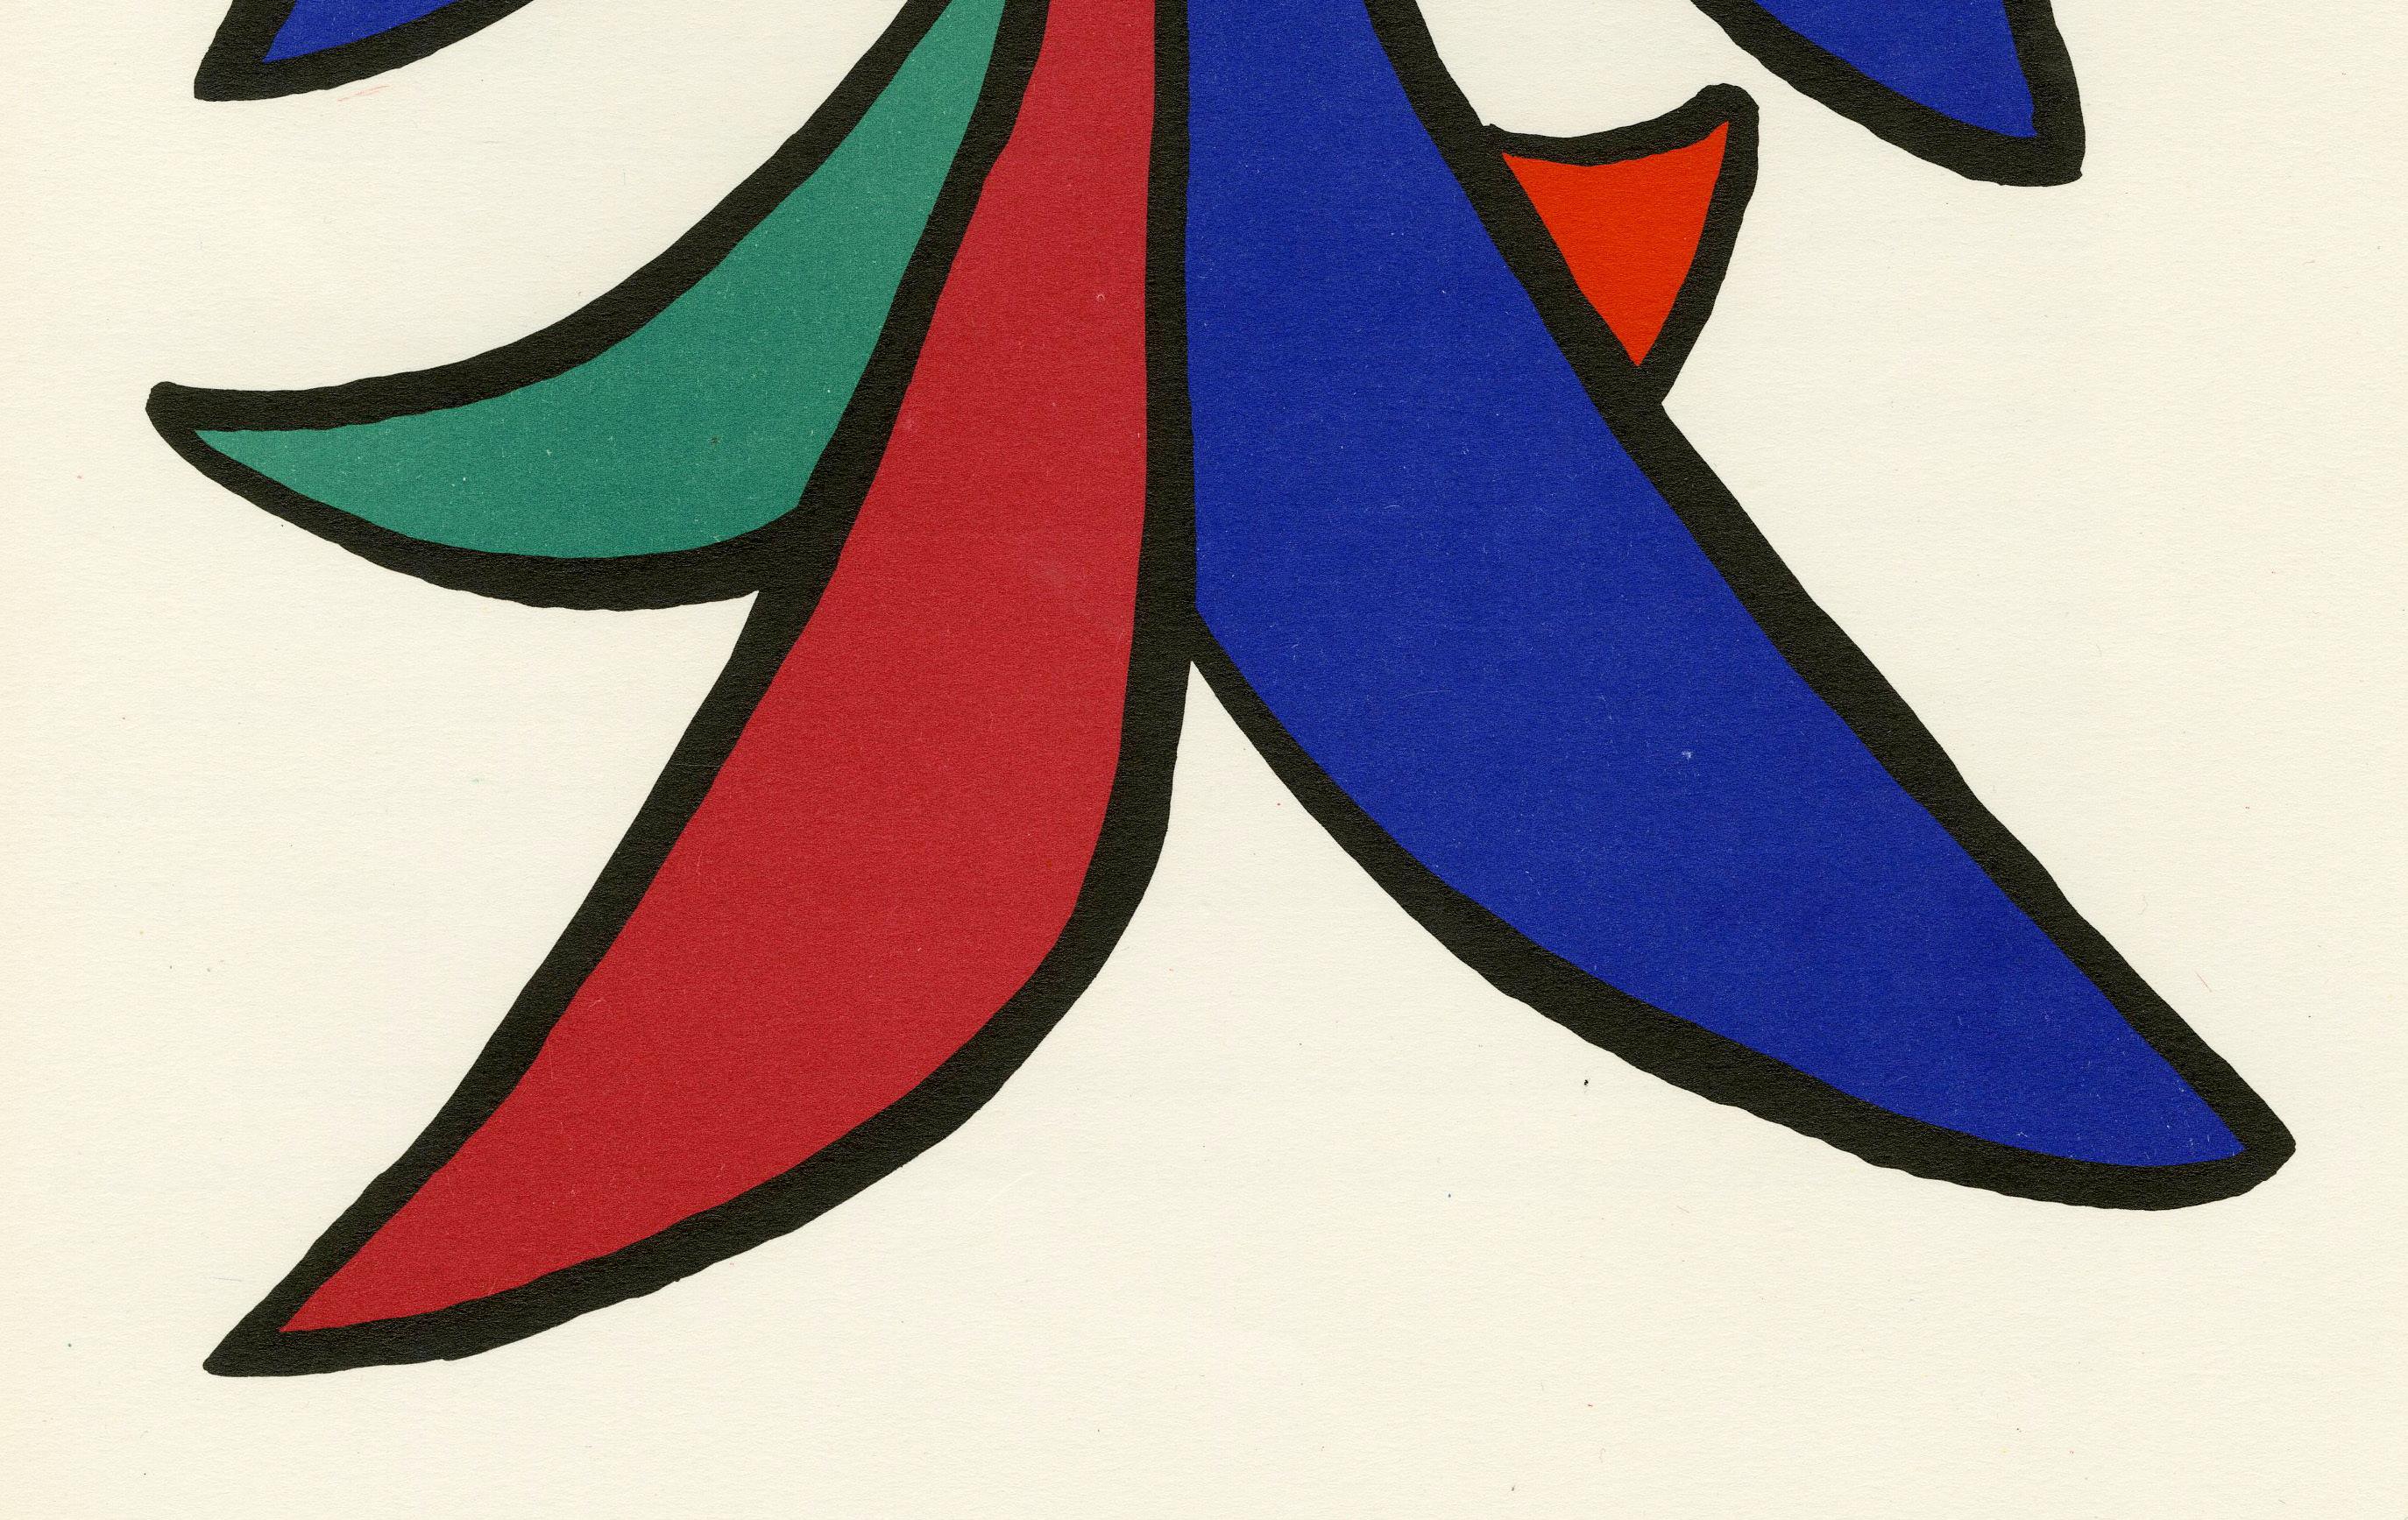 Ohne Titel (Tafel 1) DLM
Farblithographie, 1963
Unsigniert und unnummeriert (wie üblich)
Von:  Derriere le Miroir, Nr. 141
Herausgegeben von A. Maeght, Paris
Bild-/Bogengröße: 14 7/8 x 11 Zoll
Zustand: Ausgezeichnet, Farben sehr frisch
Hinweis: